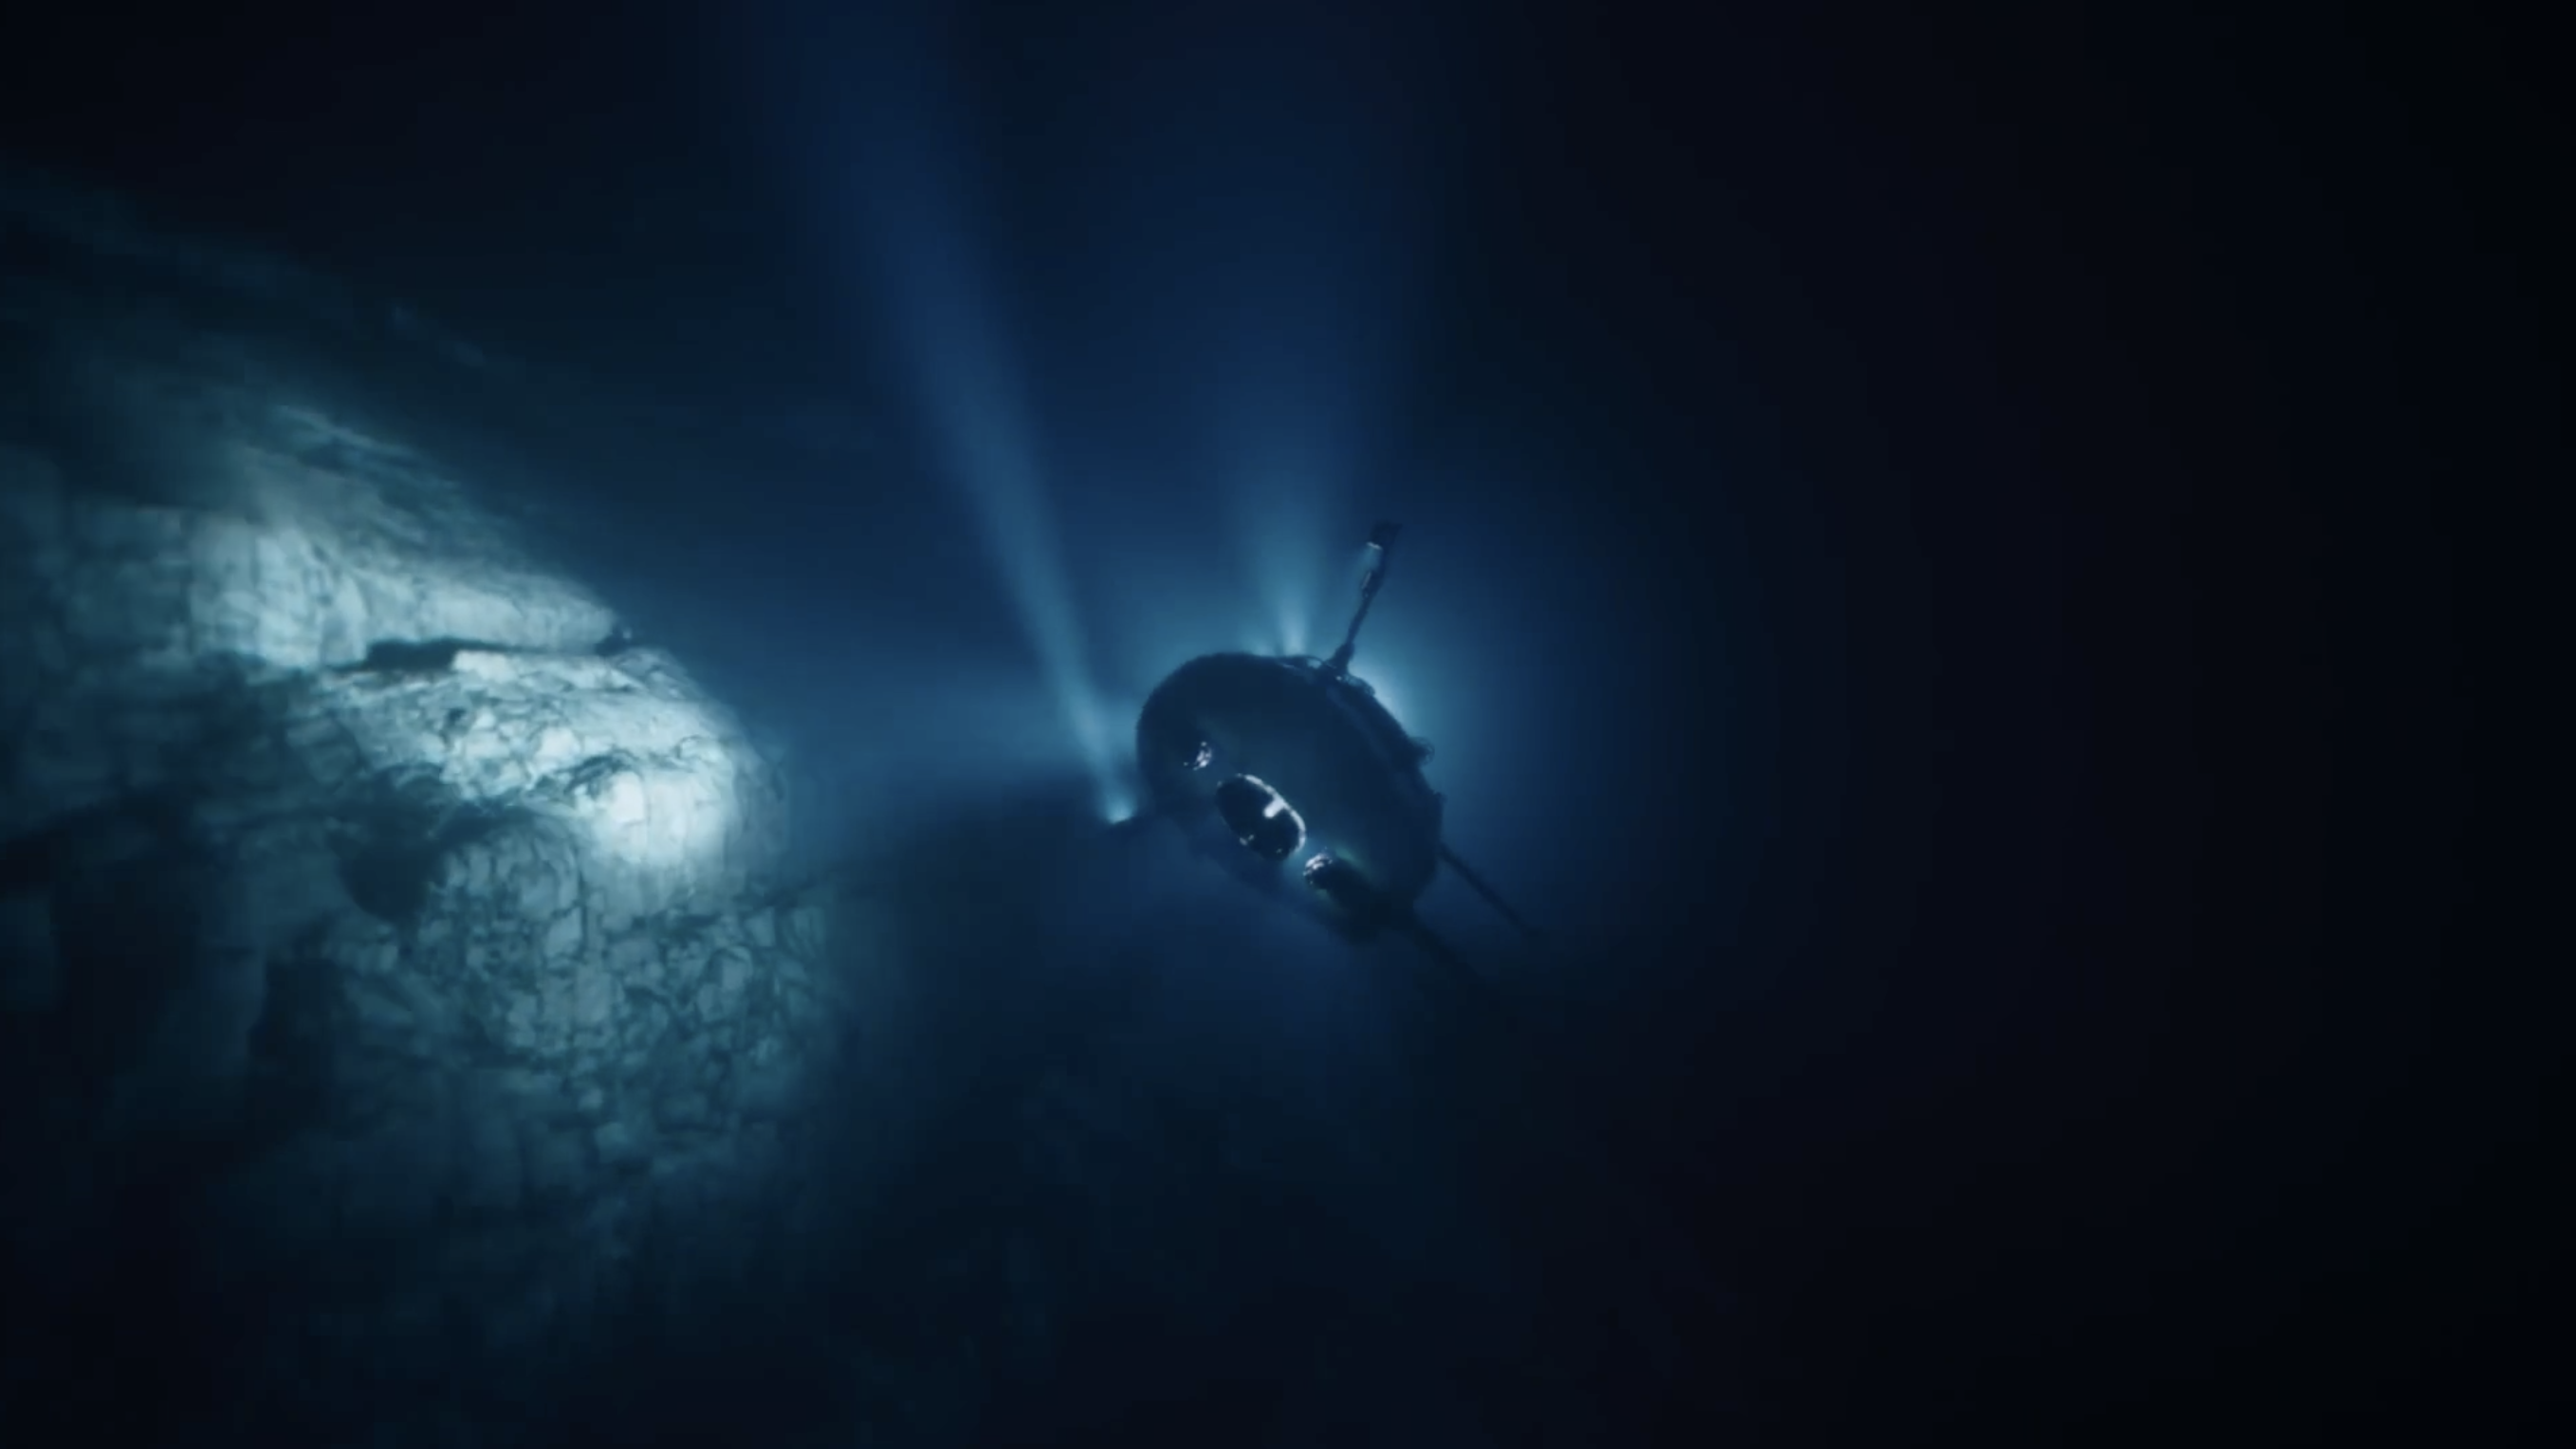 The deep sea challenge